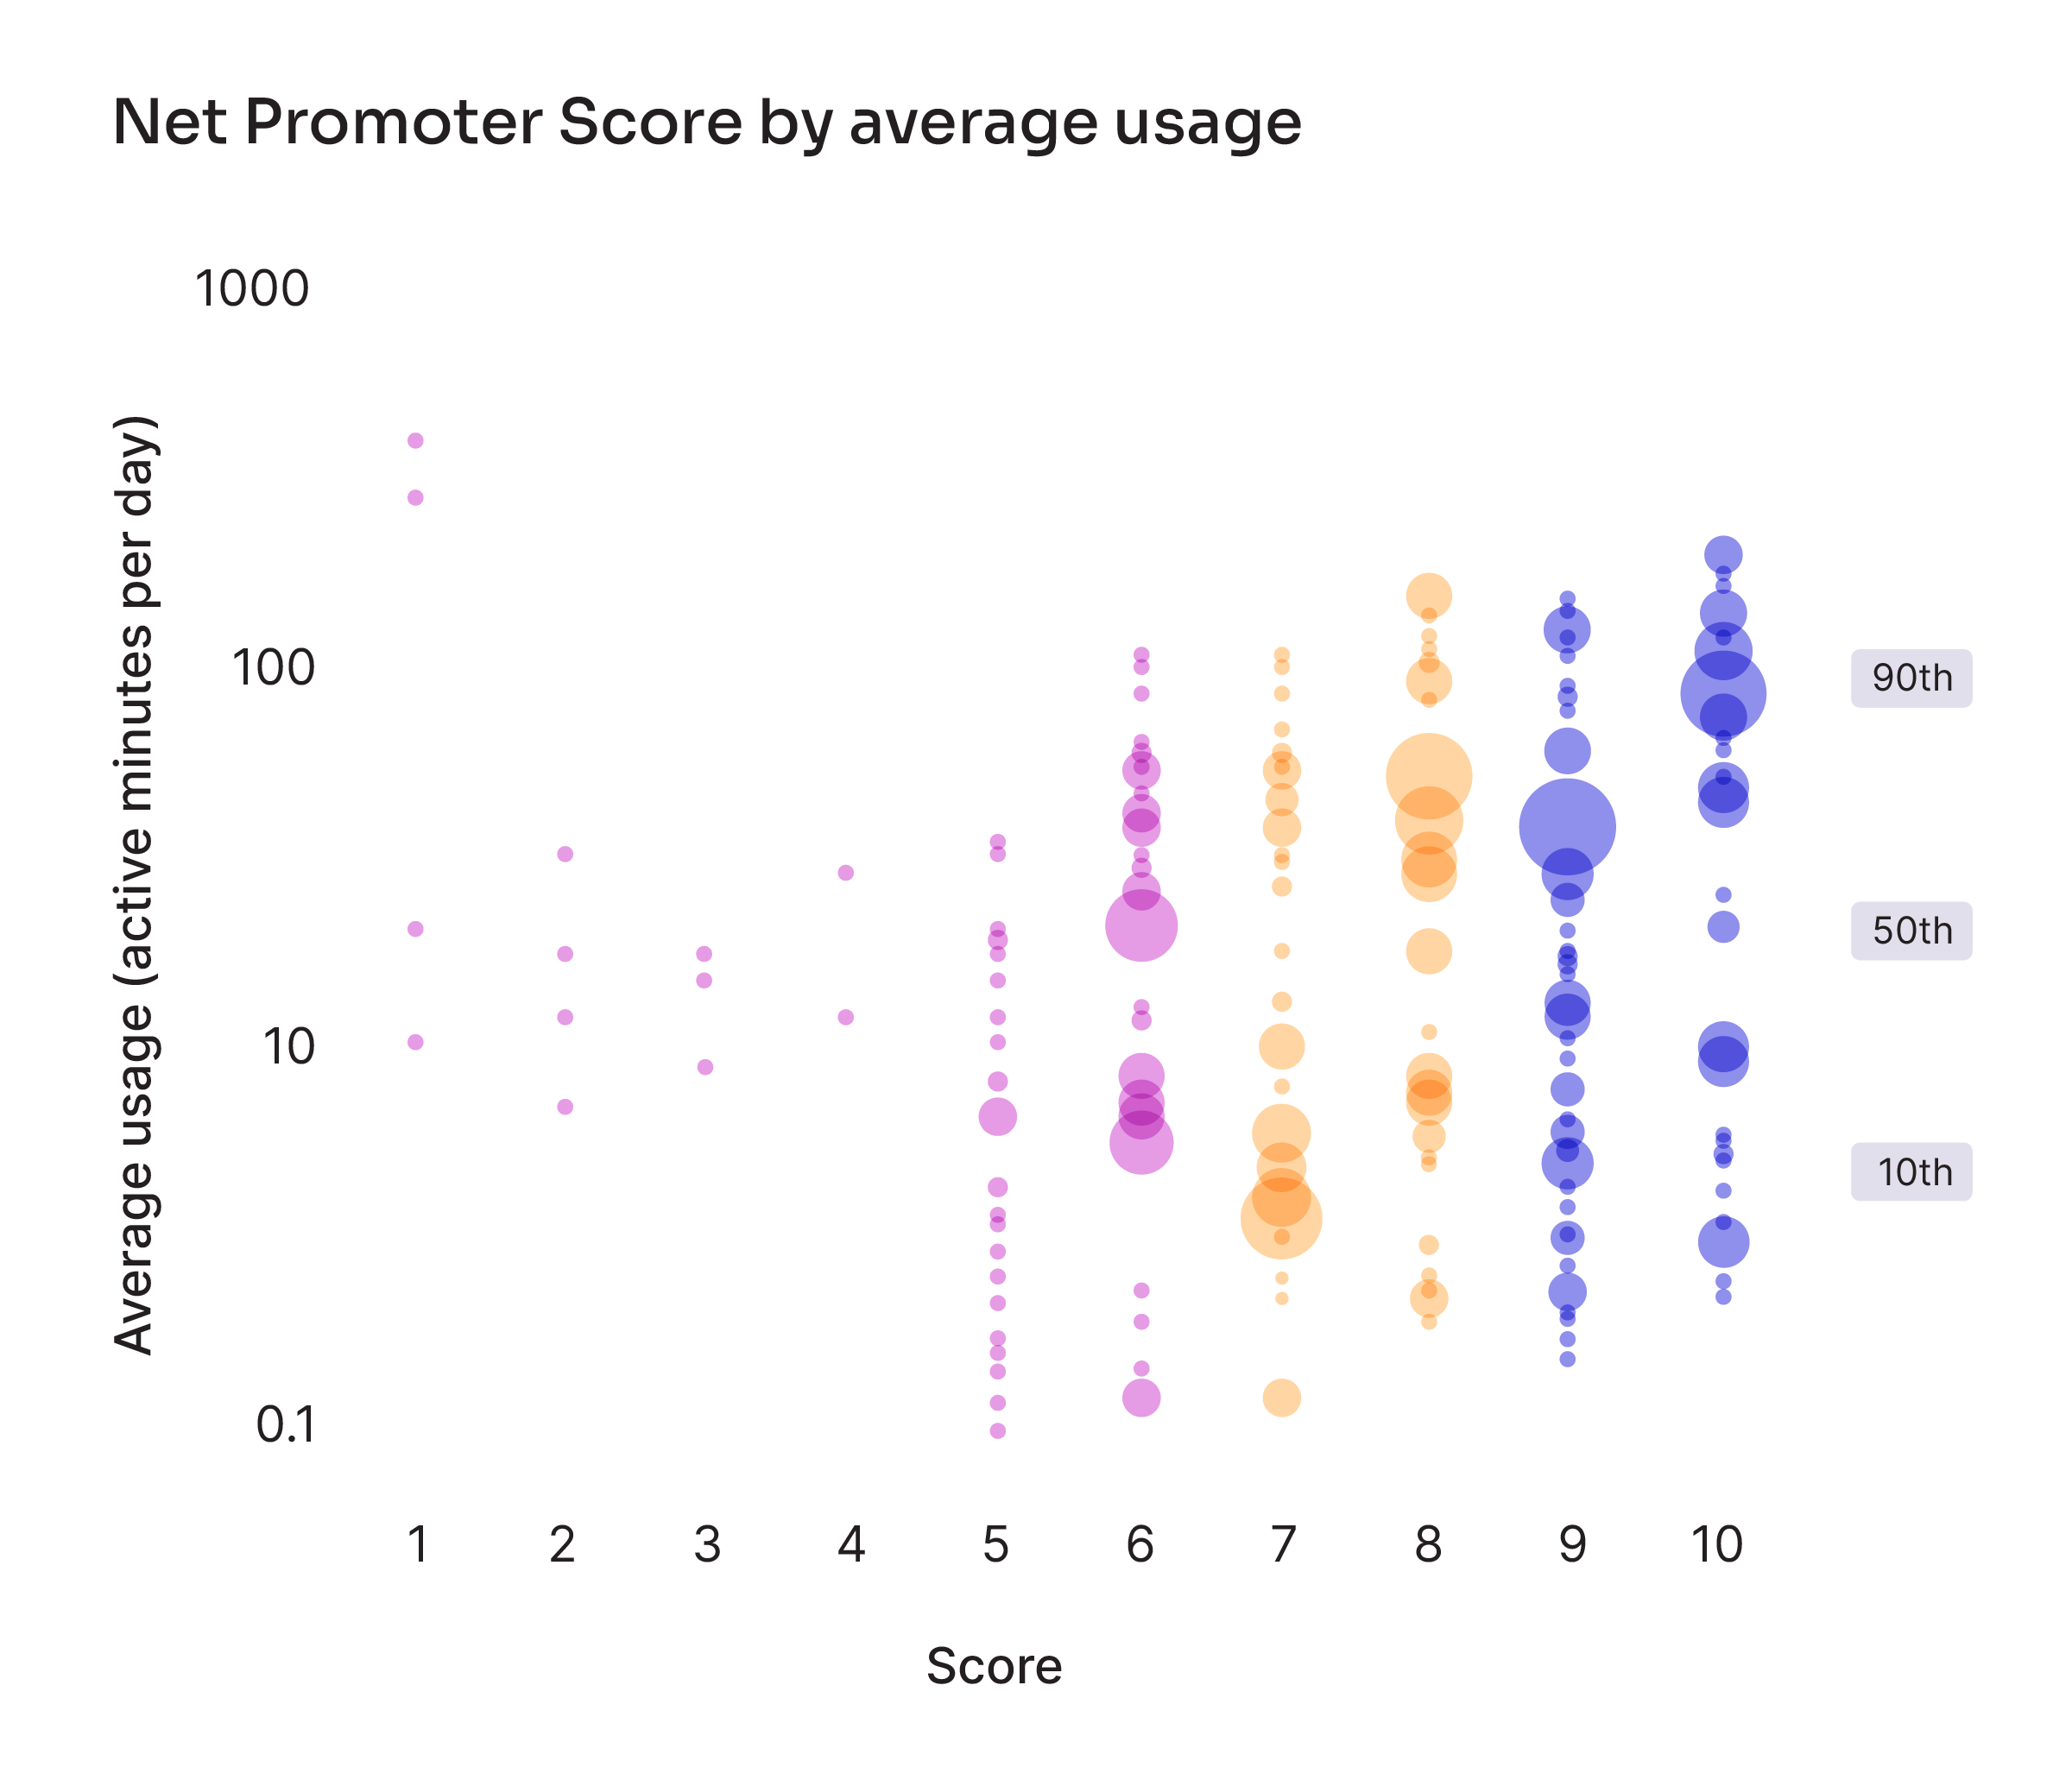 Net Promoter Score by average usage